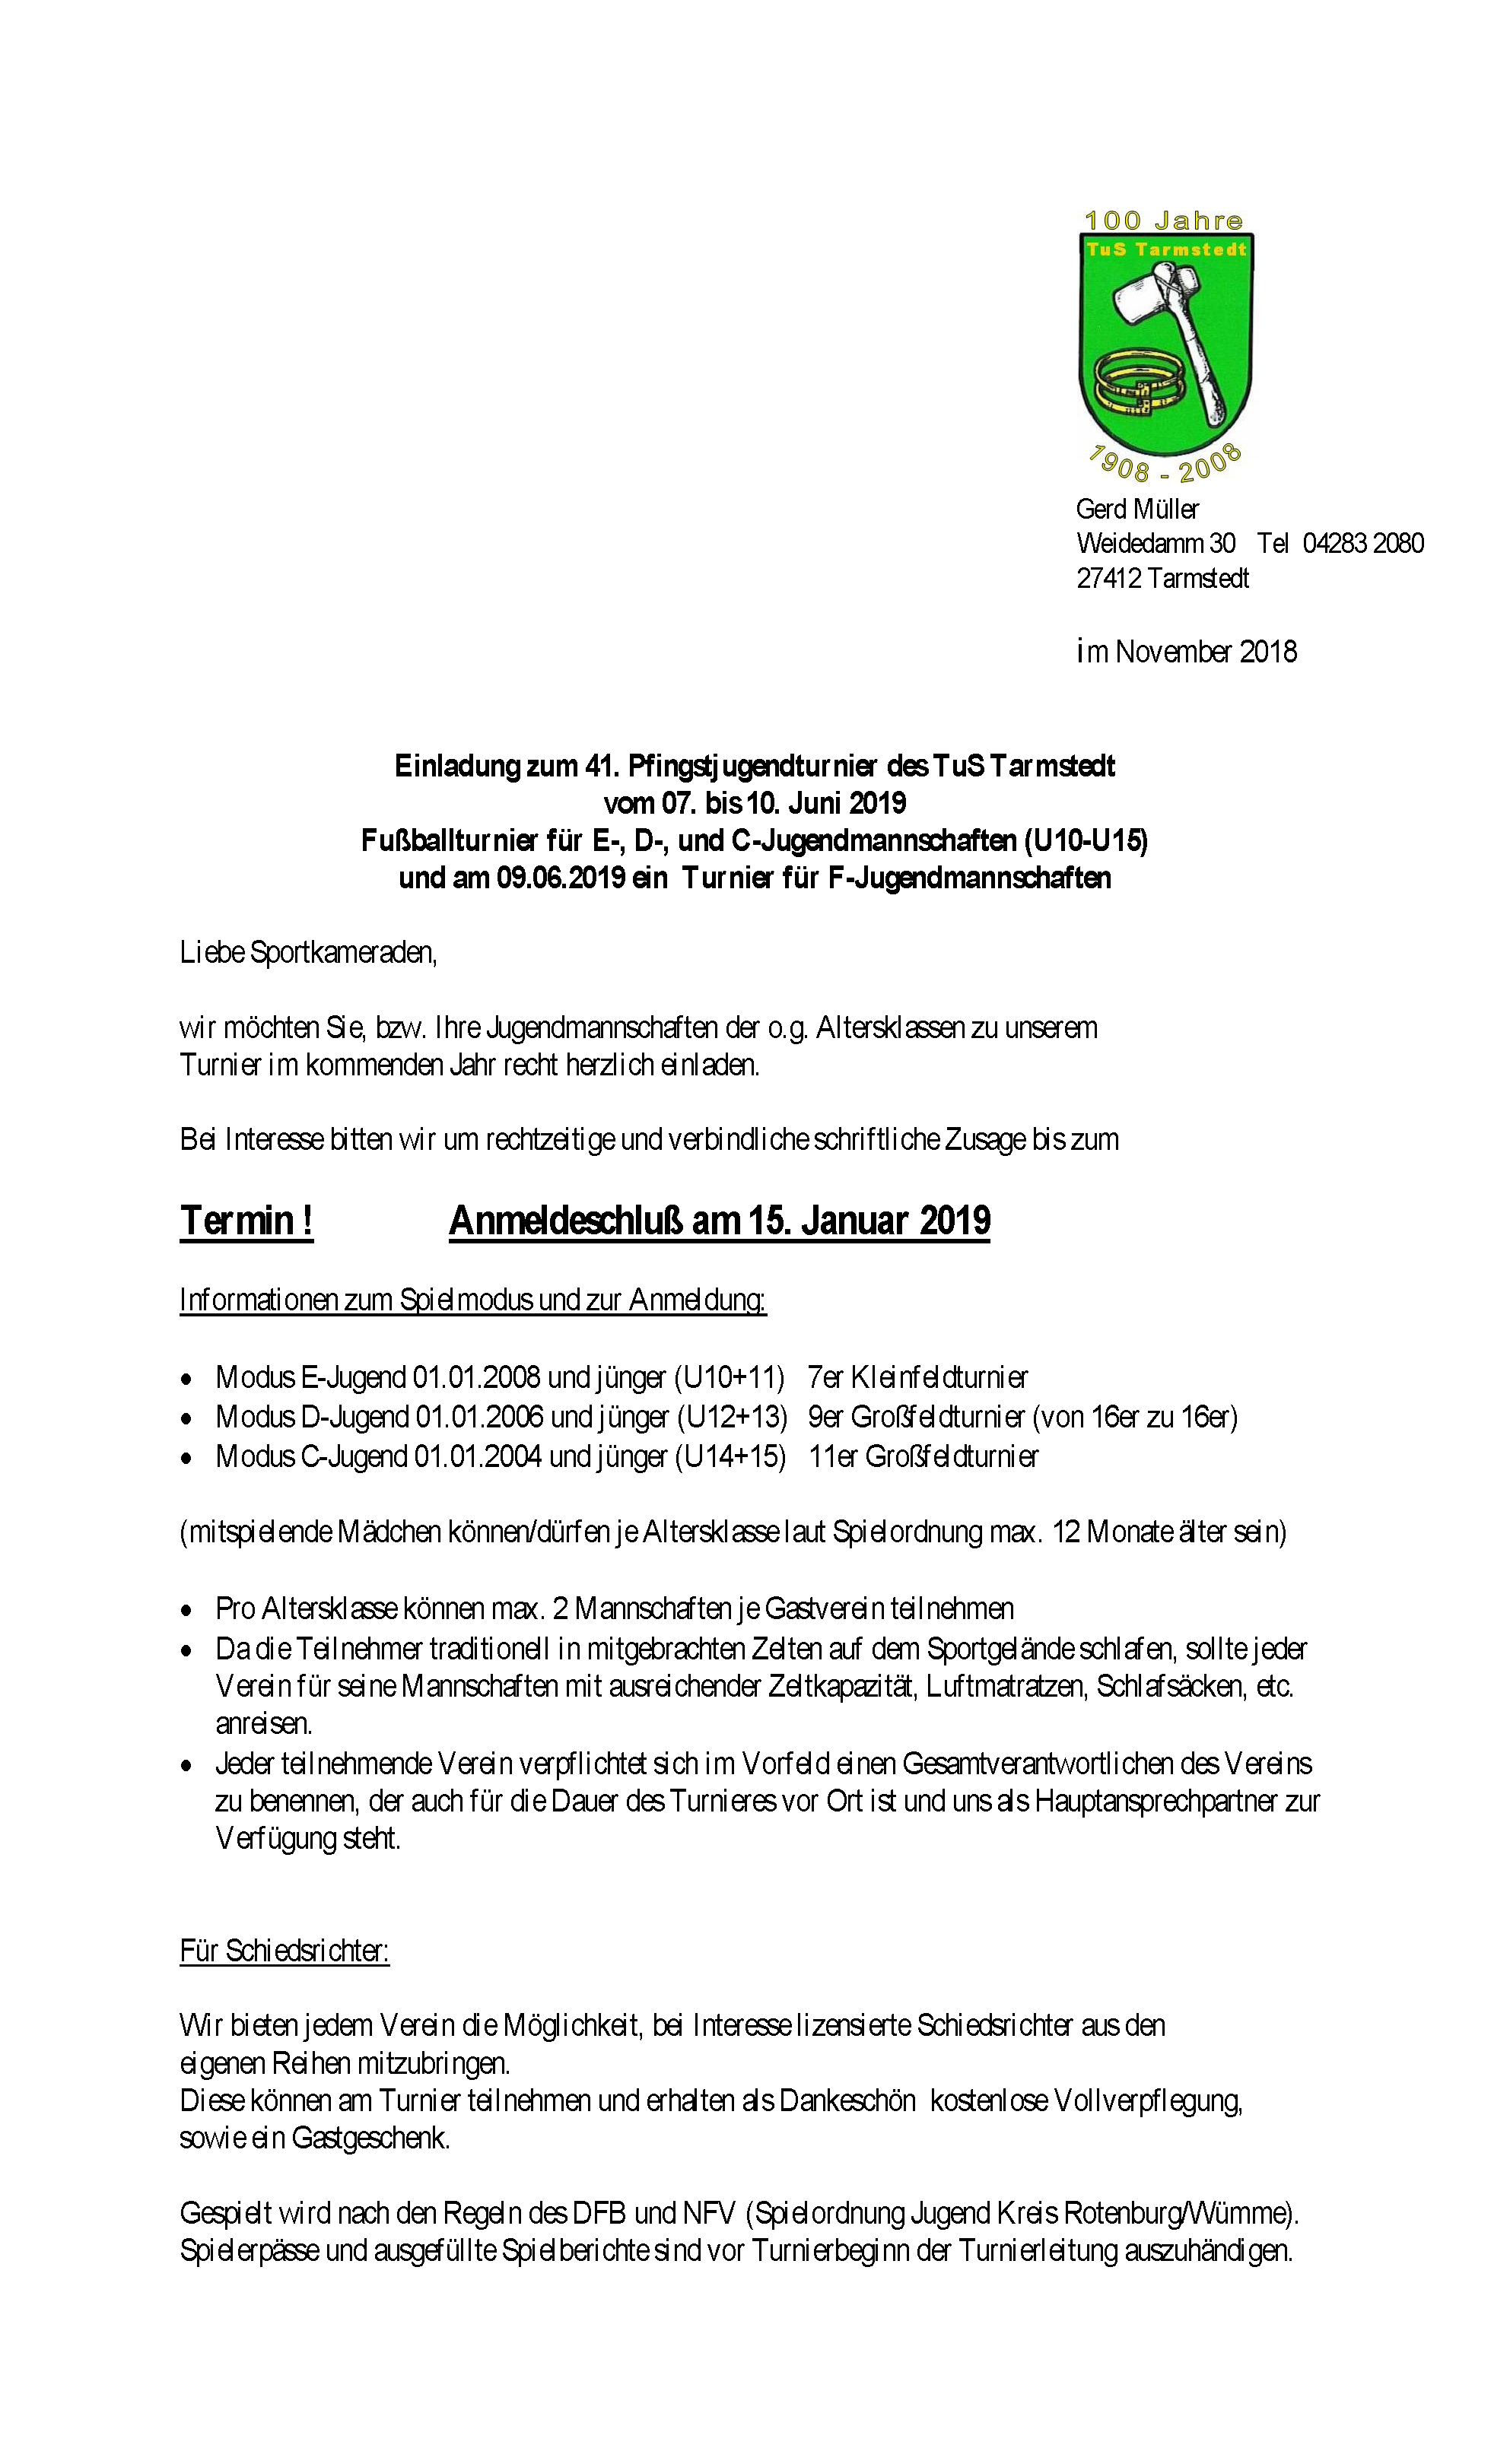 TuS Tarmstedt Pfingstturnier Einladung 2019 Seite 1